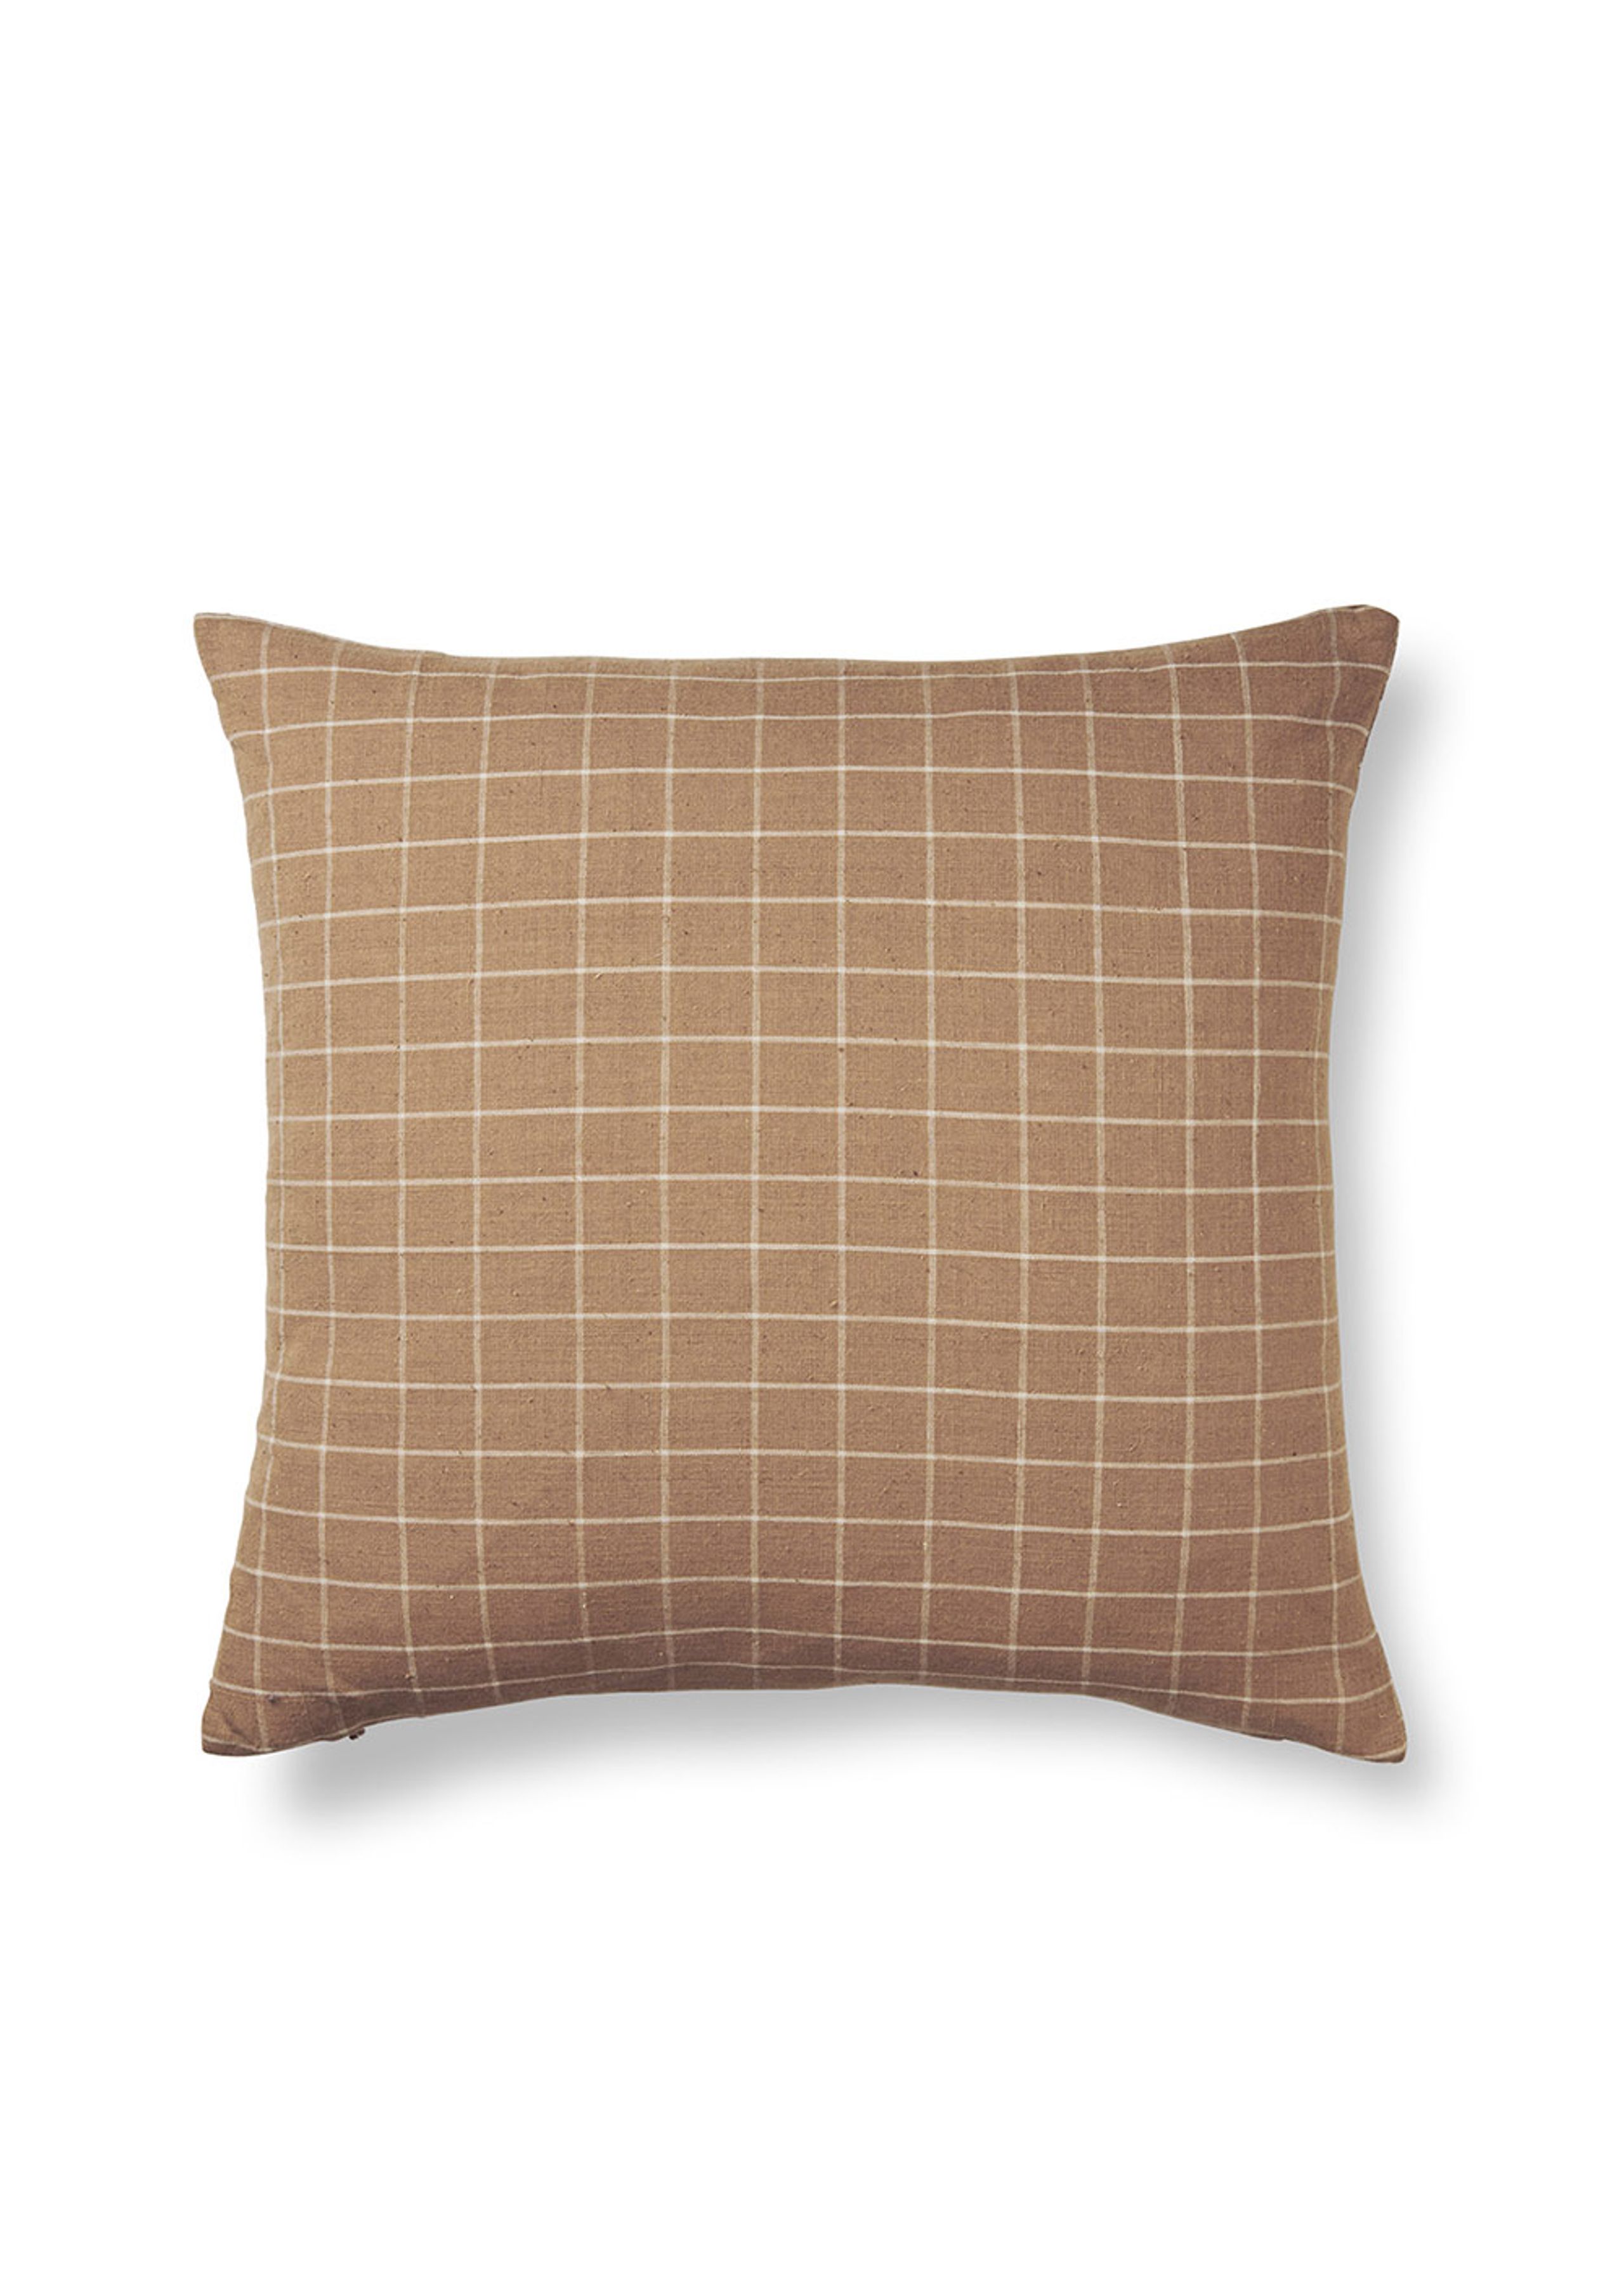 Ferm Living - Kissenbezug - Brown Cotton Cushion Cover - Check